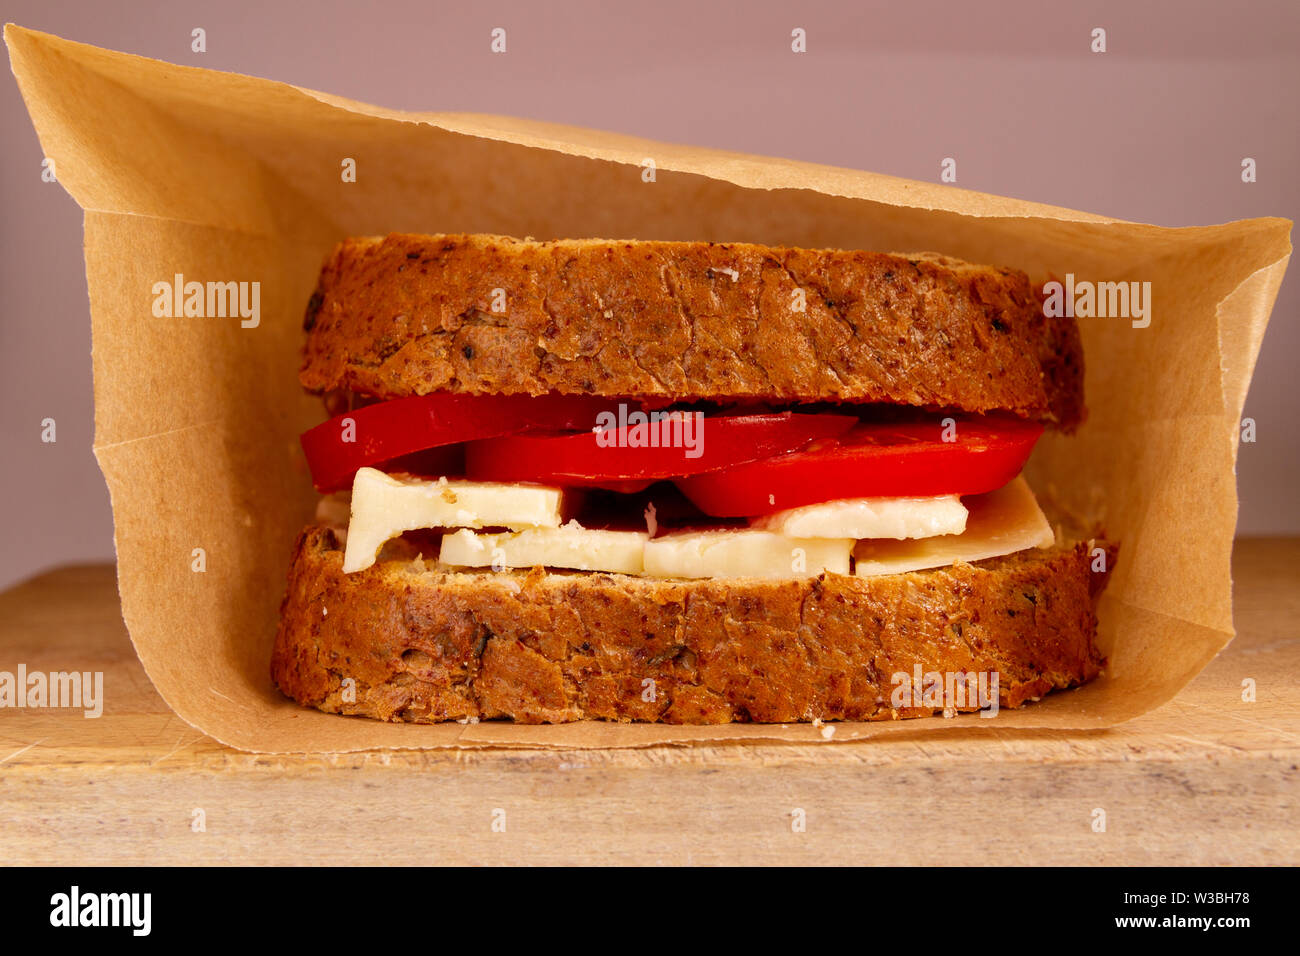 Regarder directement dans un sac brun reposant sur une planche à découper en bois, montrant un fromage et tomate sandwich sur granary Banque D'Images